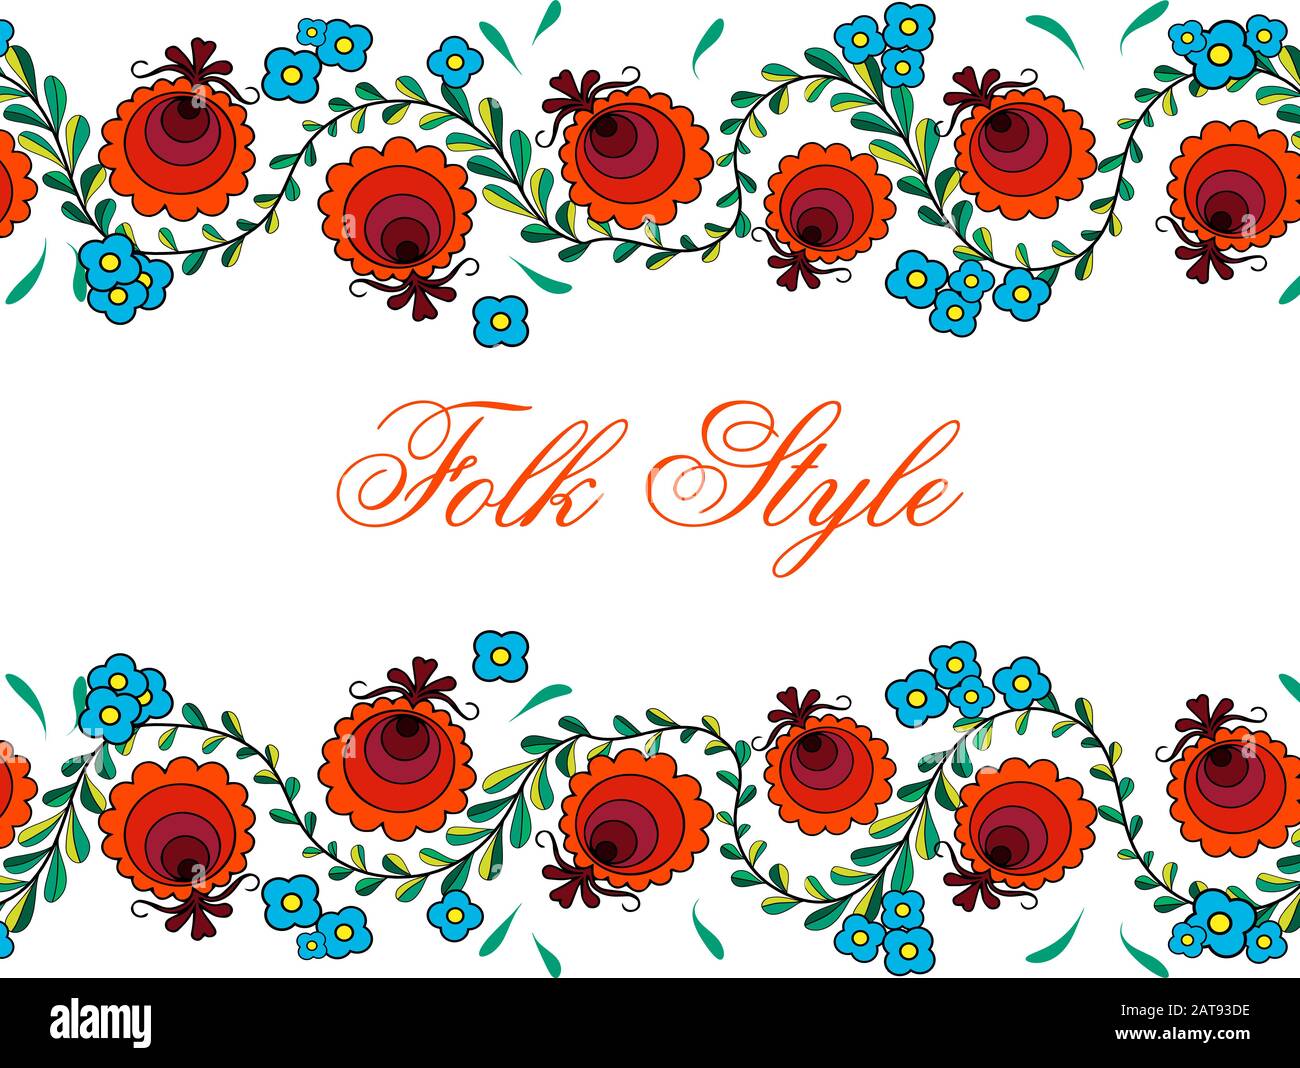 Motif fleuri folklorique - Russian Folk style Flower Design - Illustration vectorielle Illustration de Vecteur